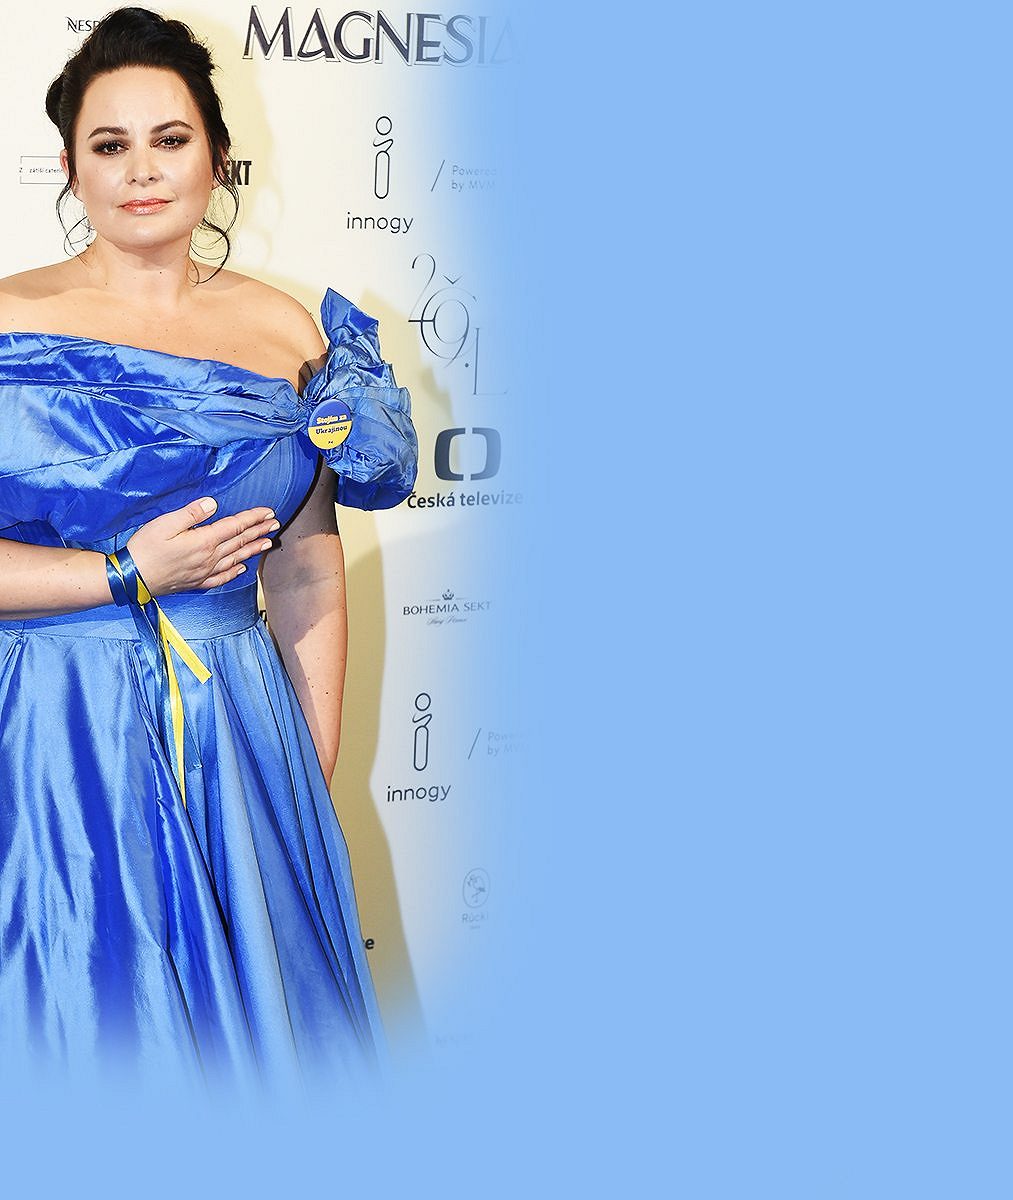 Obří modré šaty bude nosit pořád: Jitka Čvančarová ale zrecyklovala i tenhle model s pořádně hlubokým dekoltem